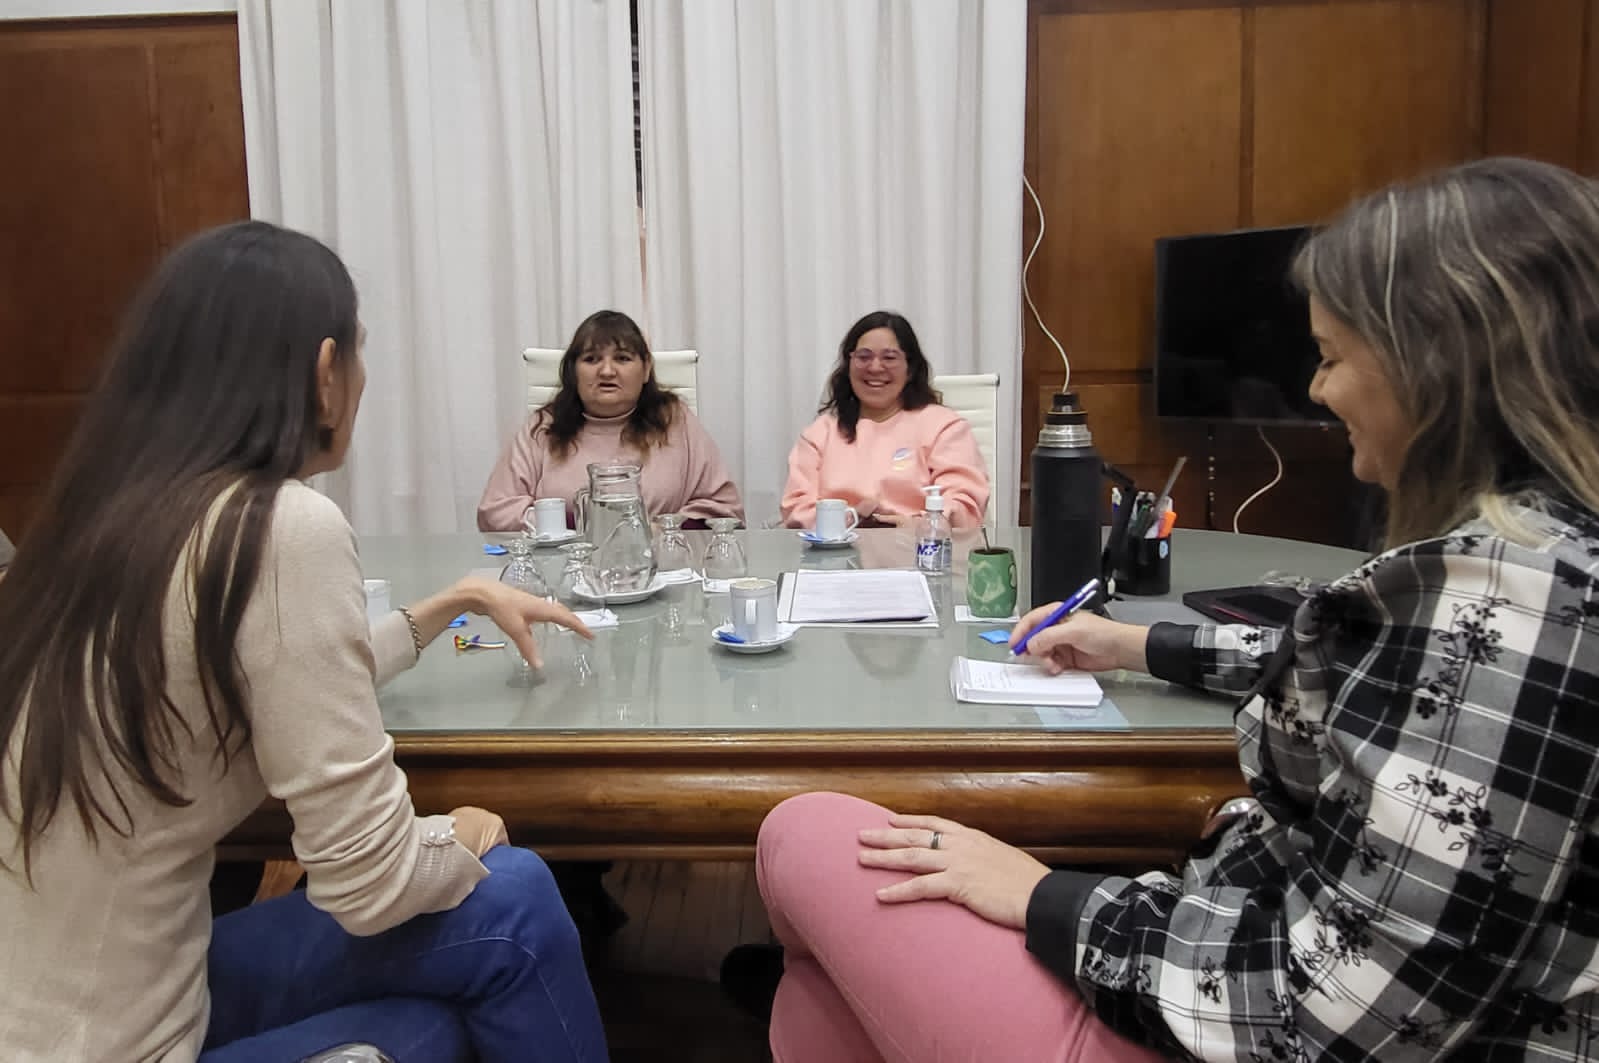 Taxi Rosa Neuquén se reunió con la ministra de las Mujeres y Diversidad. Foto: Gentileza